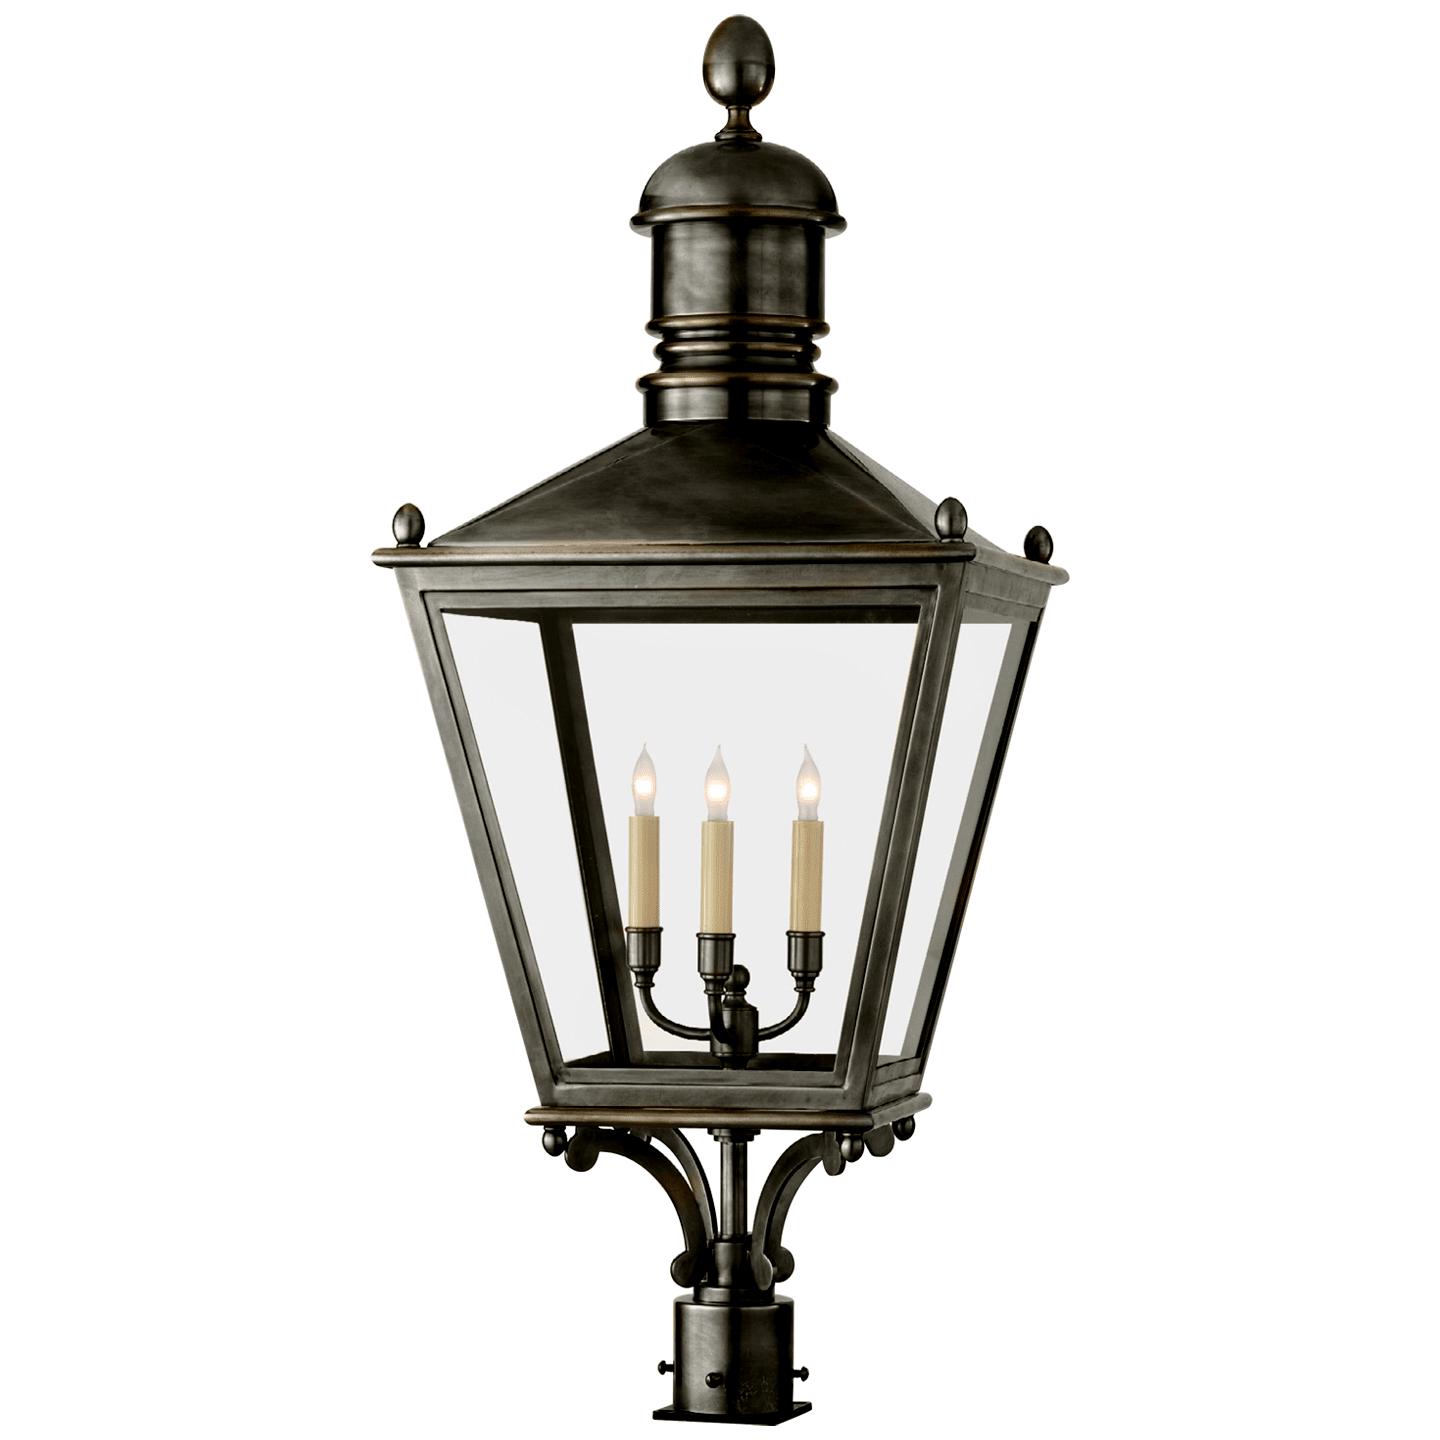 Купить Уличный фонарь Sussex Large Post Lantern в интернет-магазине roooms.ru